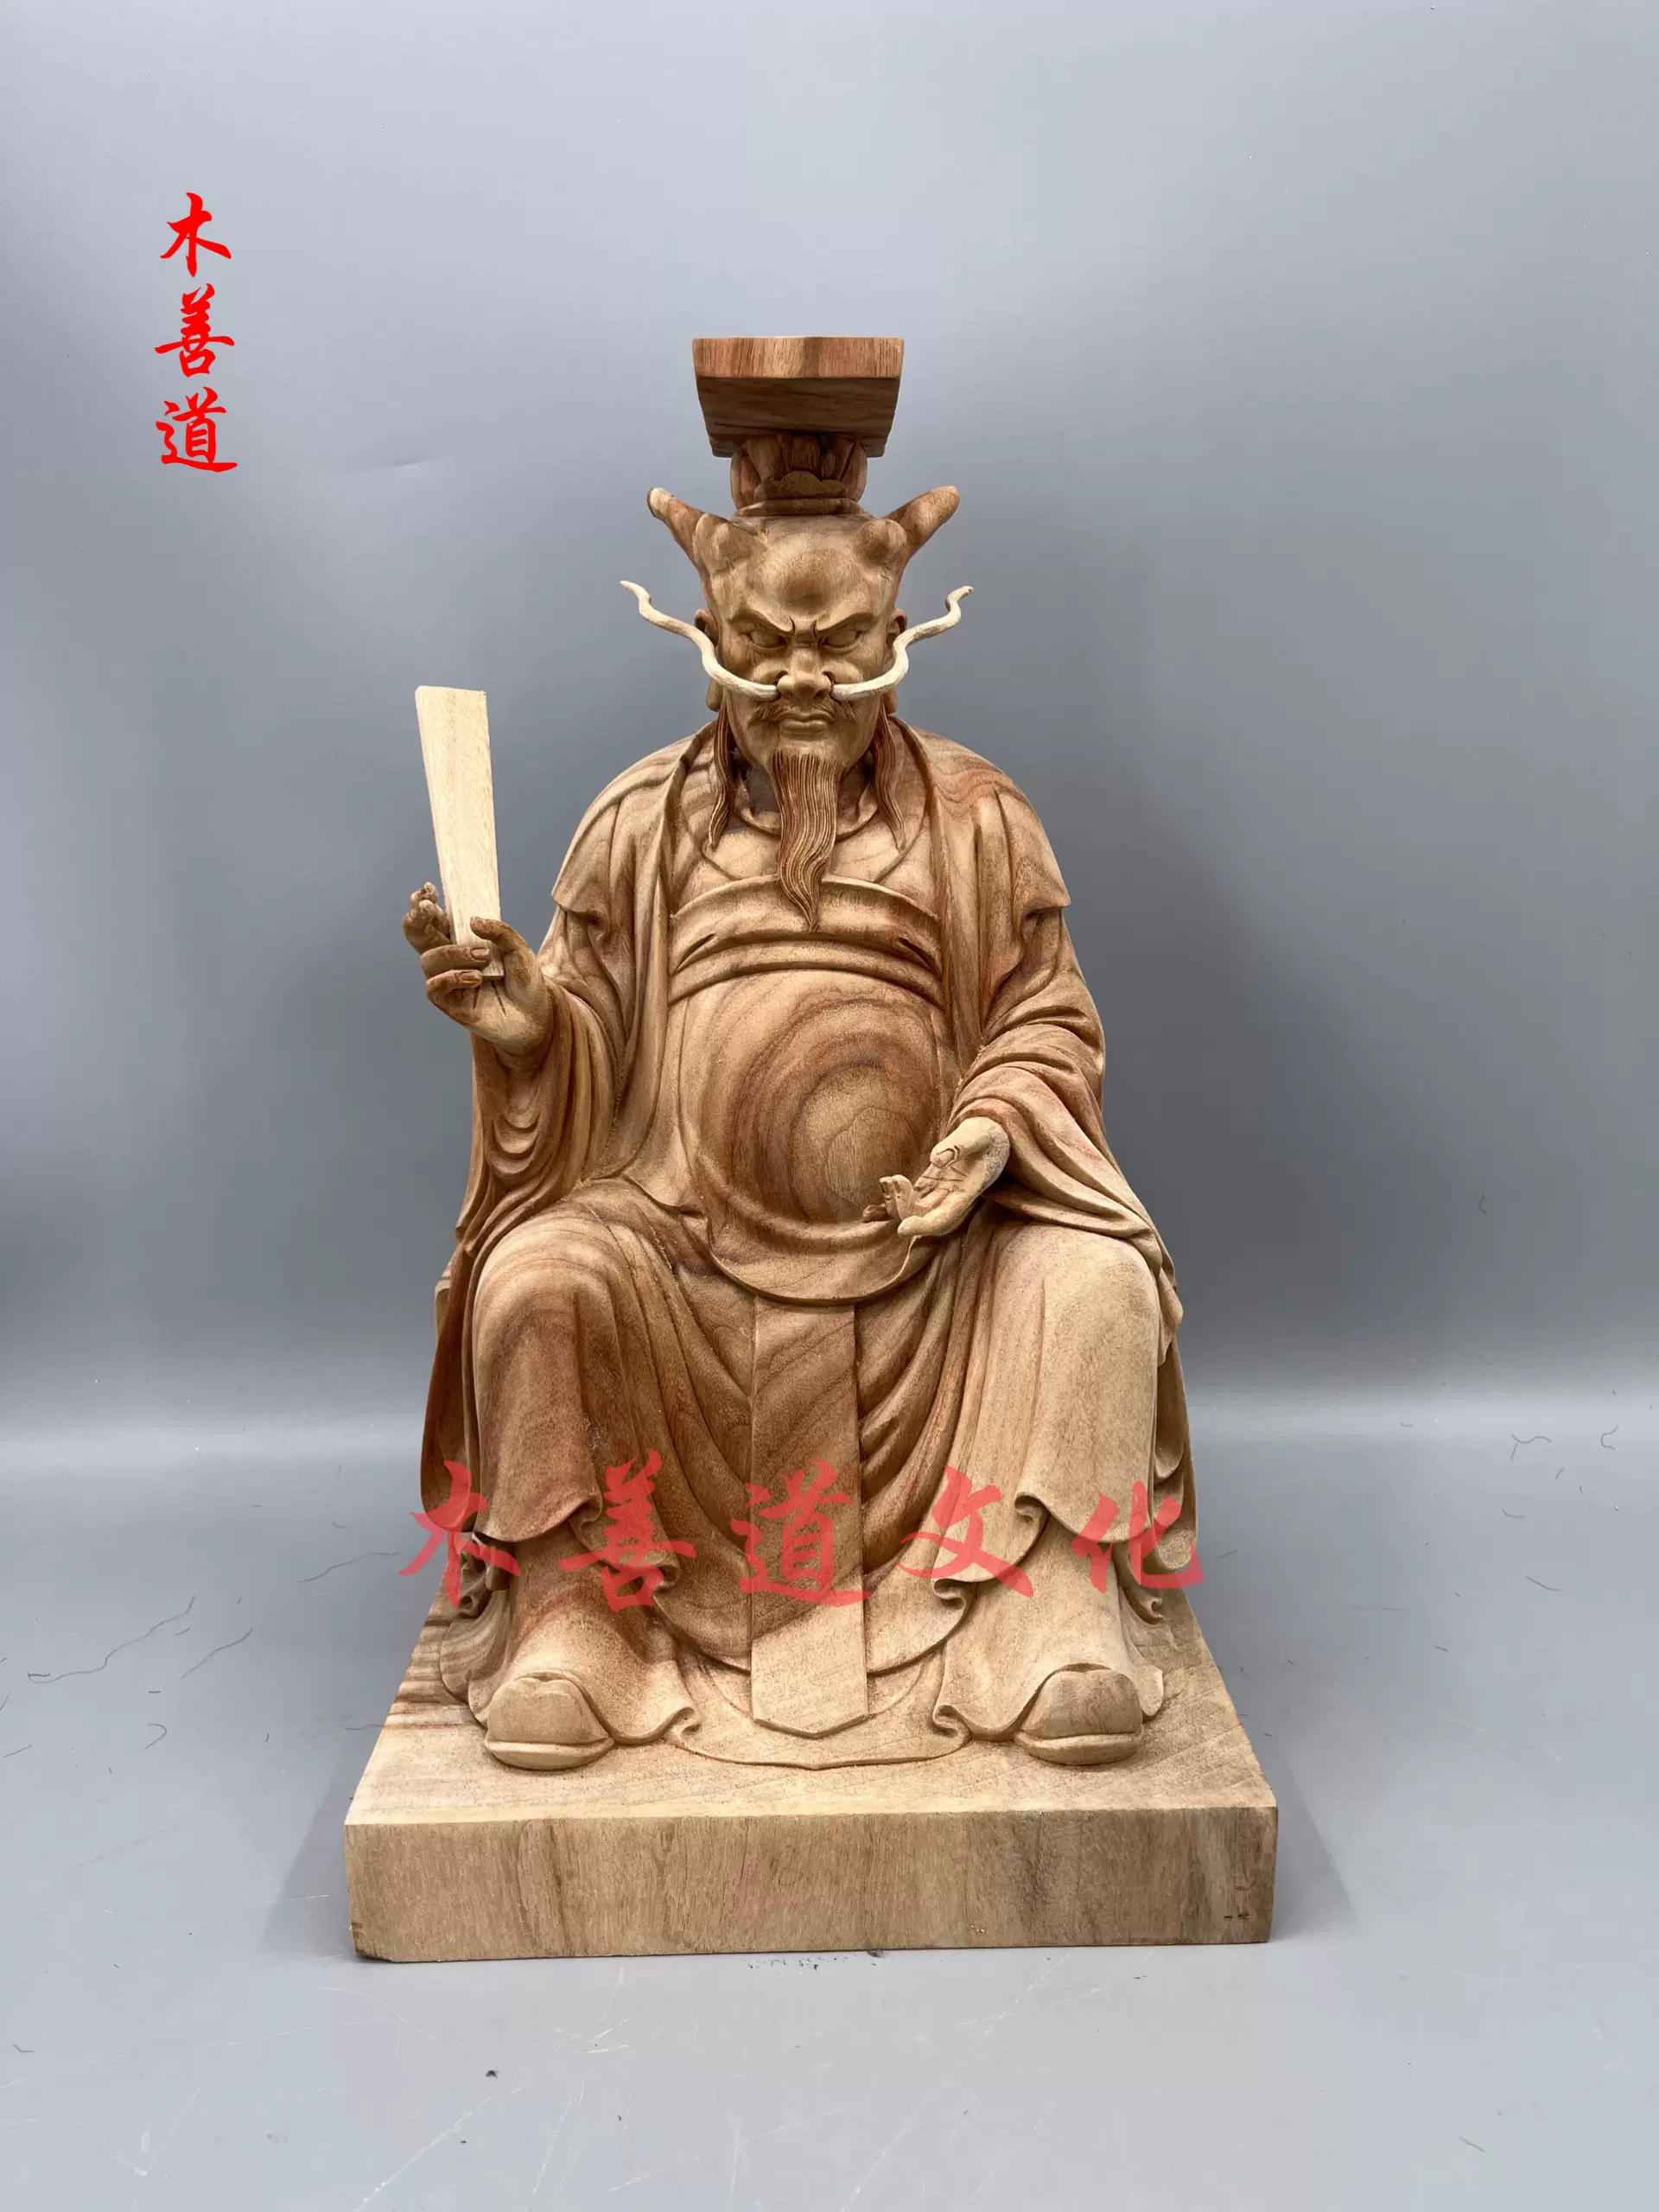 木雕神像佛像大圣佛祖齐天大圣孙悟空樟木精雕工艺48厘米-Taobao